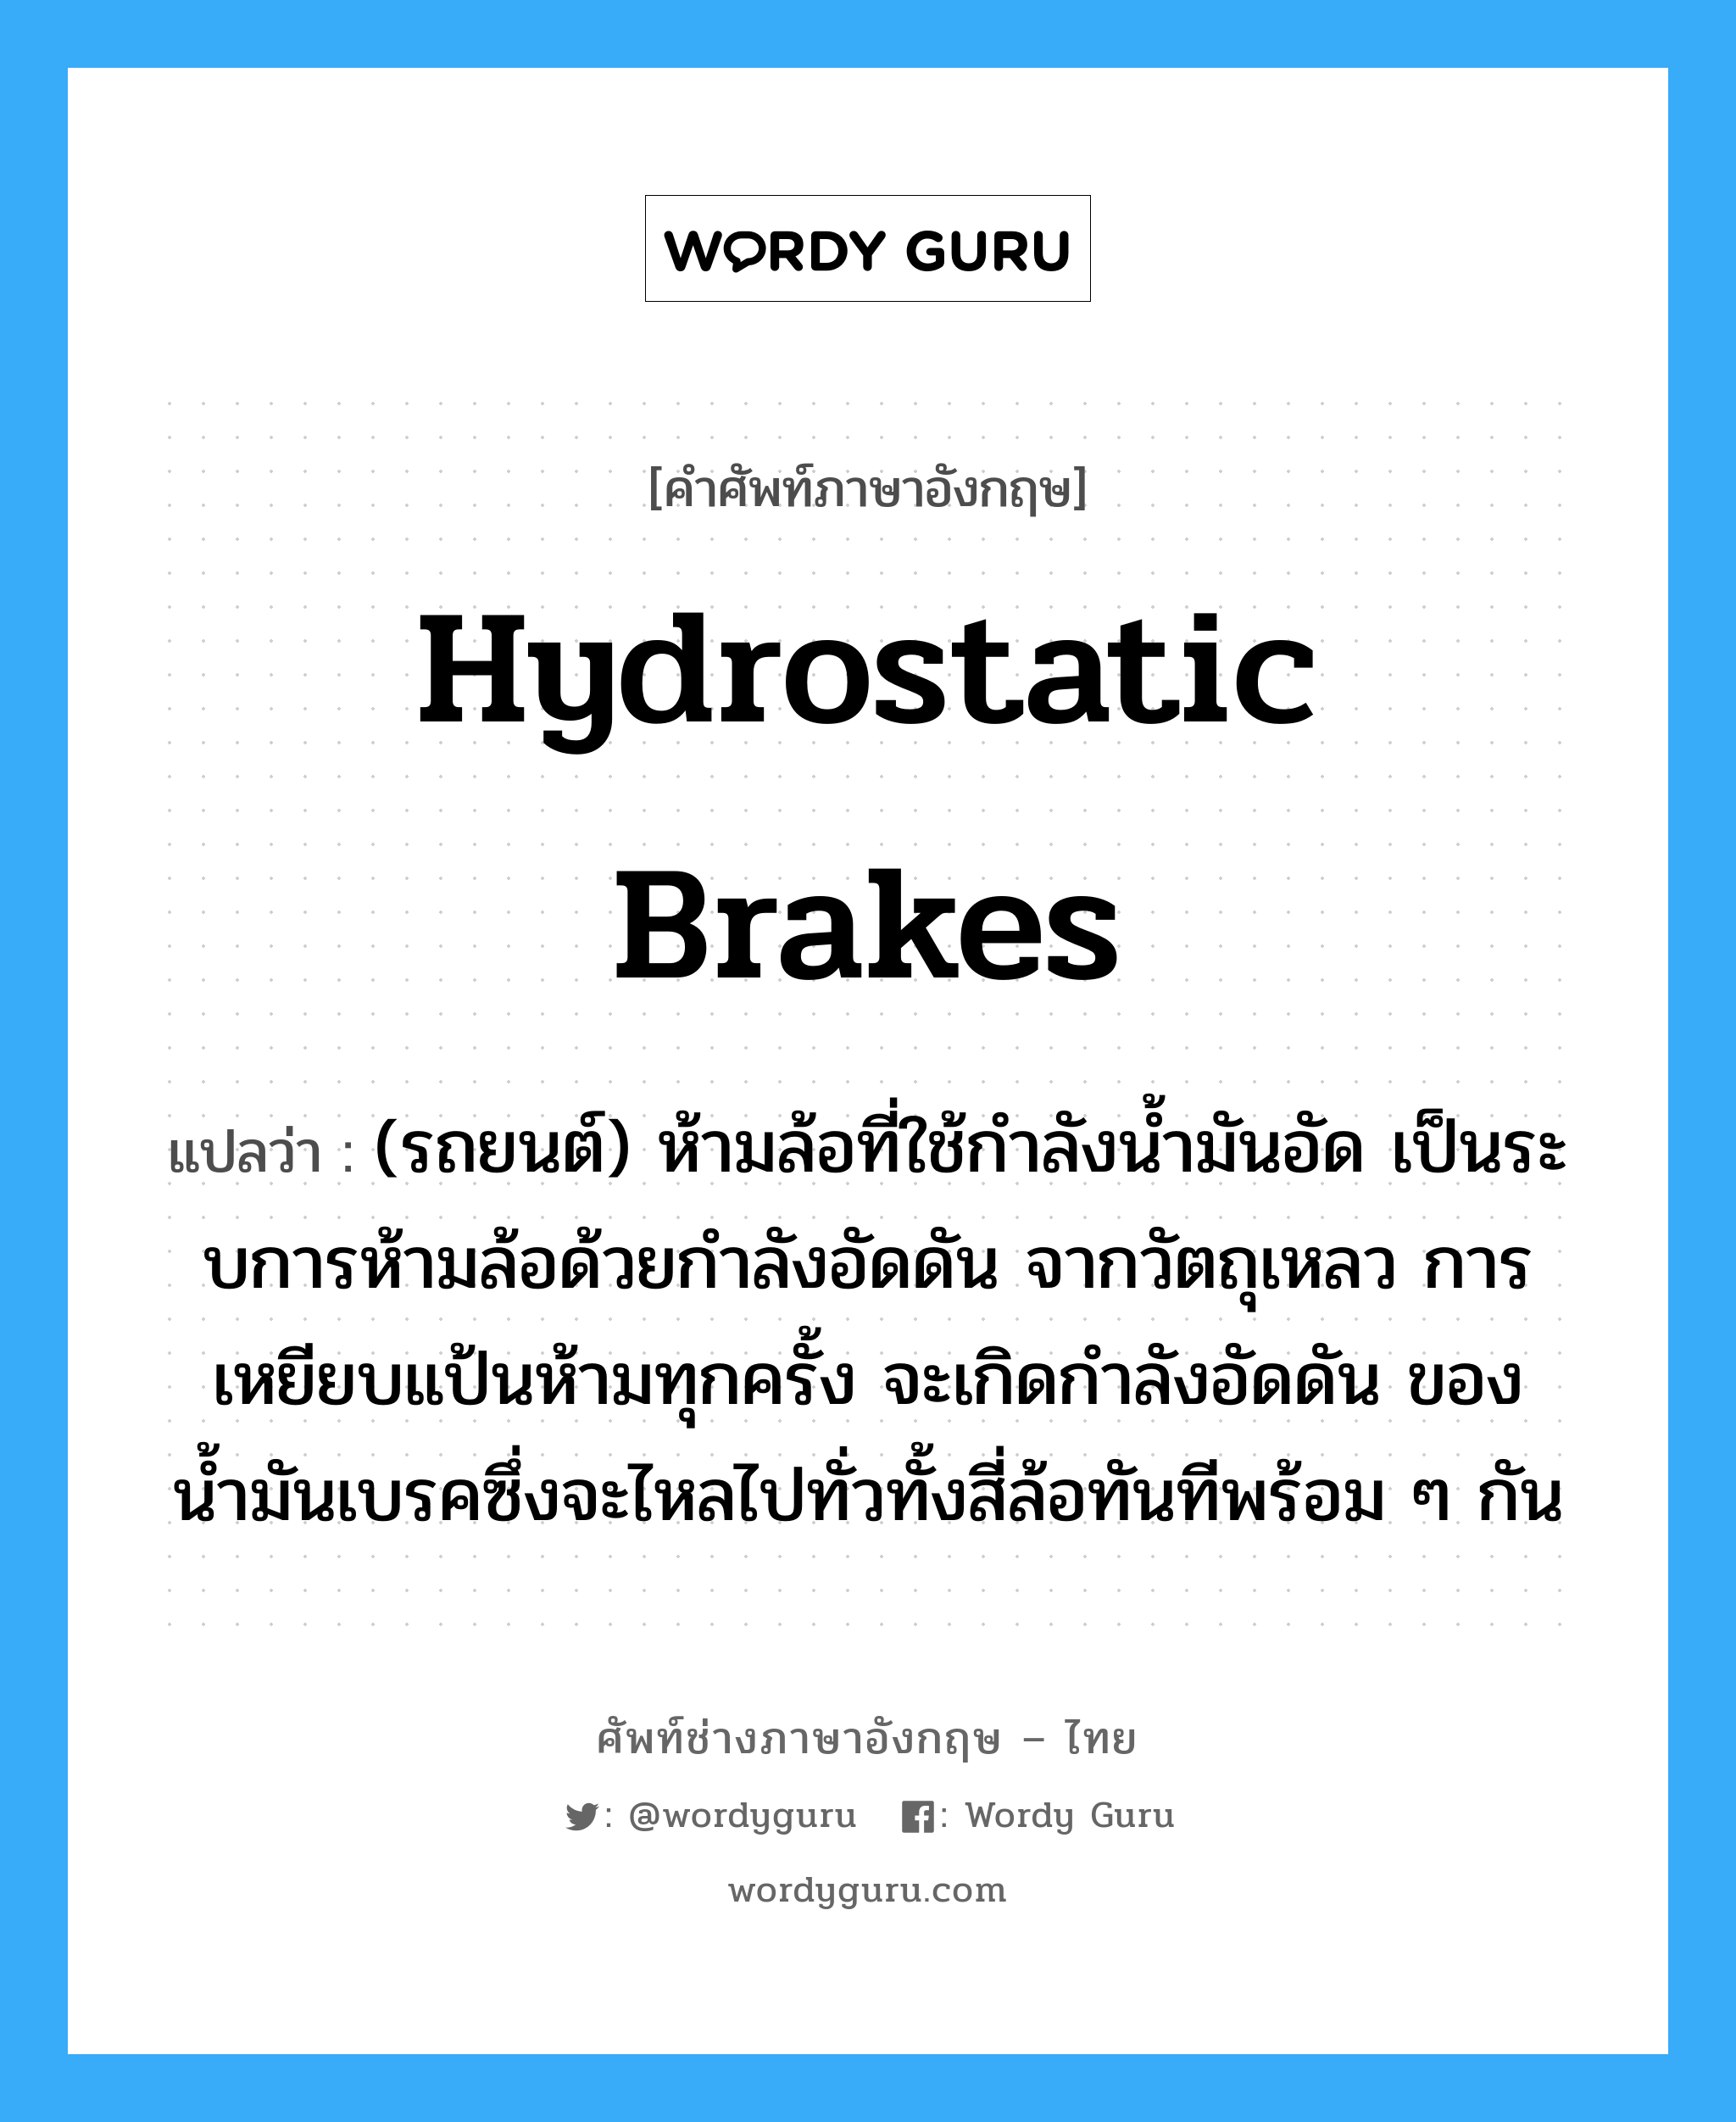 hydrostatic brakes แปลว่า?, คำศัพท์ช่างภาษาอังกฤษ - ไทย hydrostatic brakes คำศัพท์ภาษาอังกฤษ hydrostatic brakes แปลว่า (รถยนต์) ห้ามล้อที่ใช้กำลังน้ำมันอัด เป็นระบการห้ามล้อด้วยกำลังอัดดัน จากวัตถุเหลว การเหยียบแป้นห้ามทุกครั้ง จะเกิดกำลังอัดดัน ของน้ำมันเบรคซึ่งจะไหลไปทั่วทั้งสี่ล้อทันทีพร้อม ๆ กัน